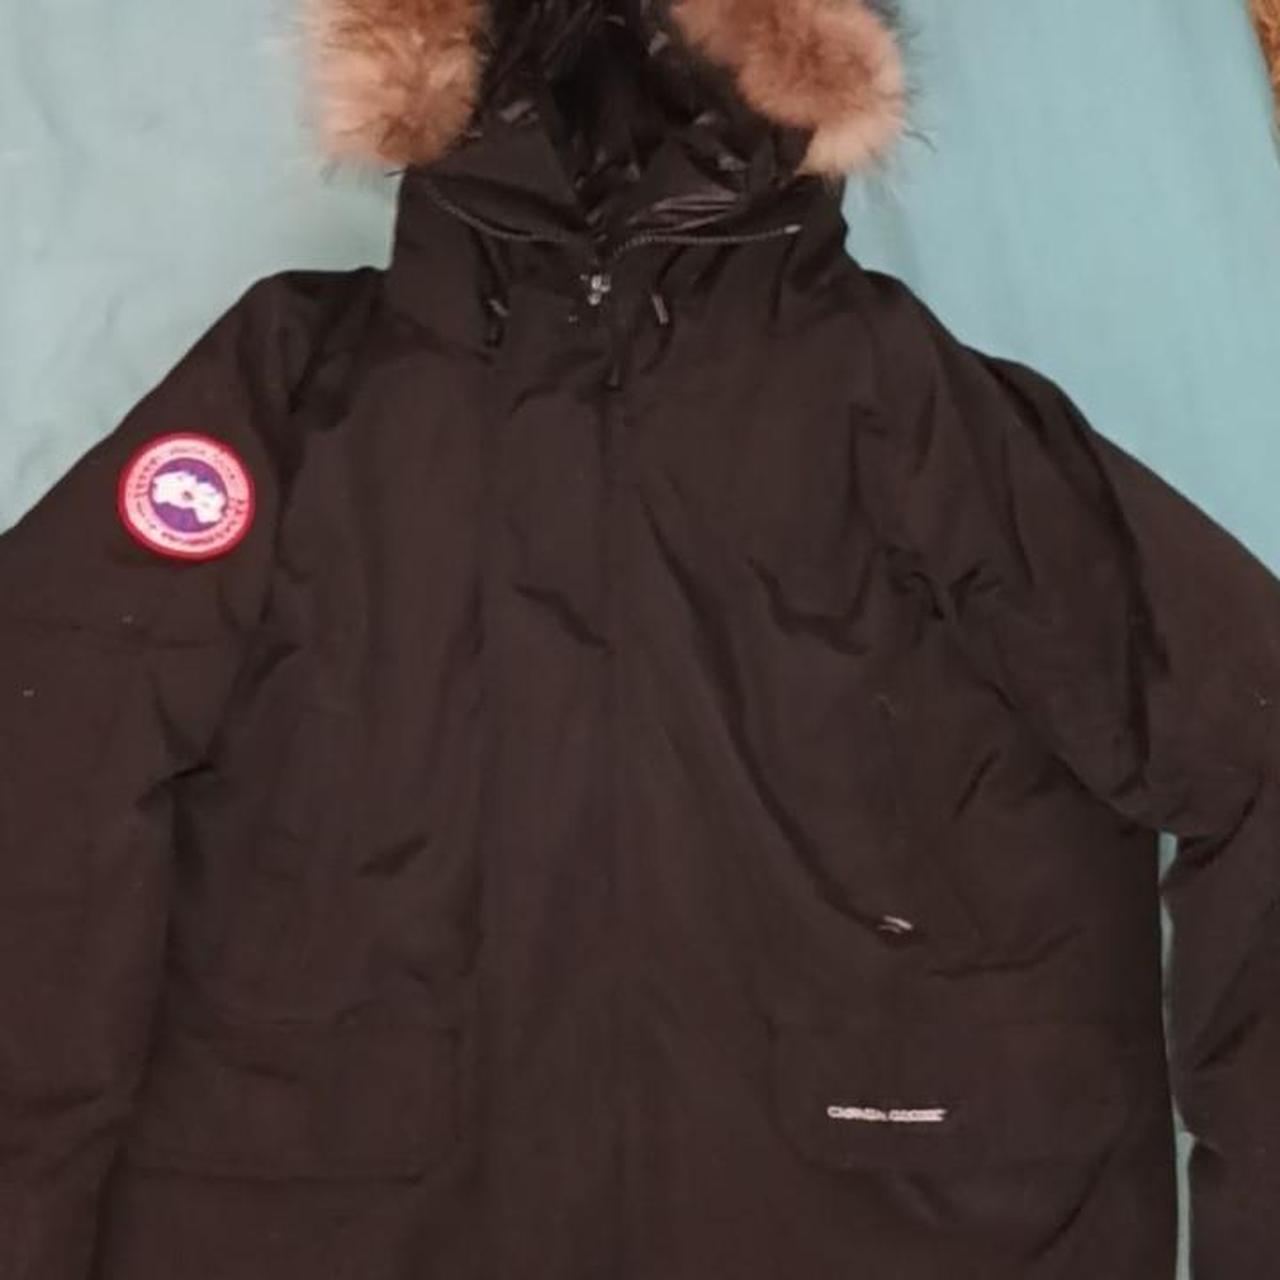 Authentic Canada Goose Winter Coat - Depop